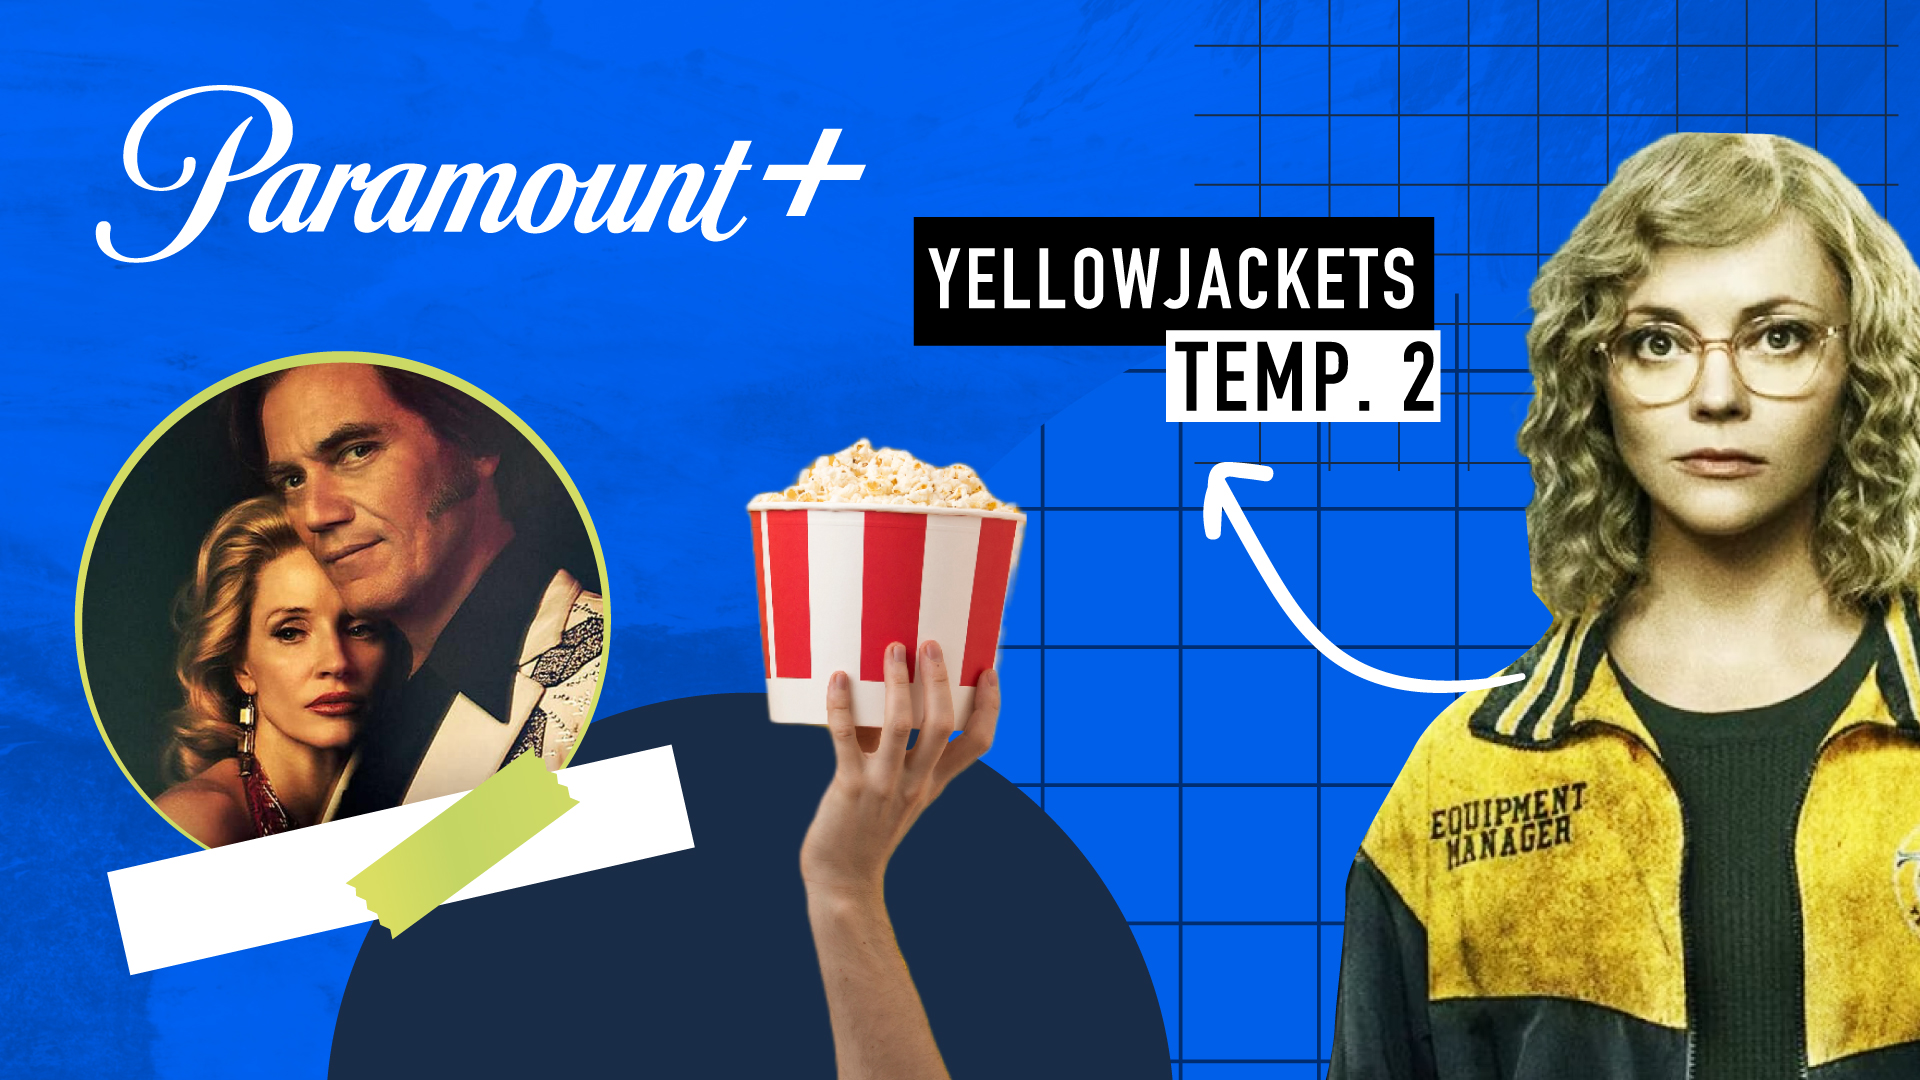 Paramount+ en marzo: nuevas temporadas de “Yellowjackets” y “South Park” y los lanzamientos de “Rabbit Hole” y “George & Tammy”, entre otros títulos